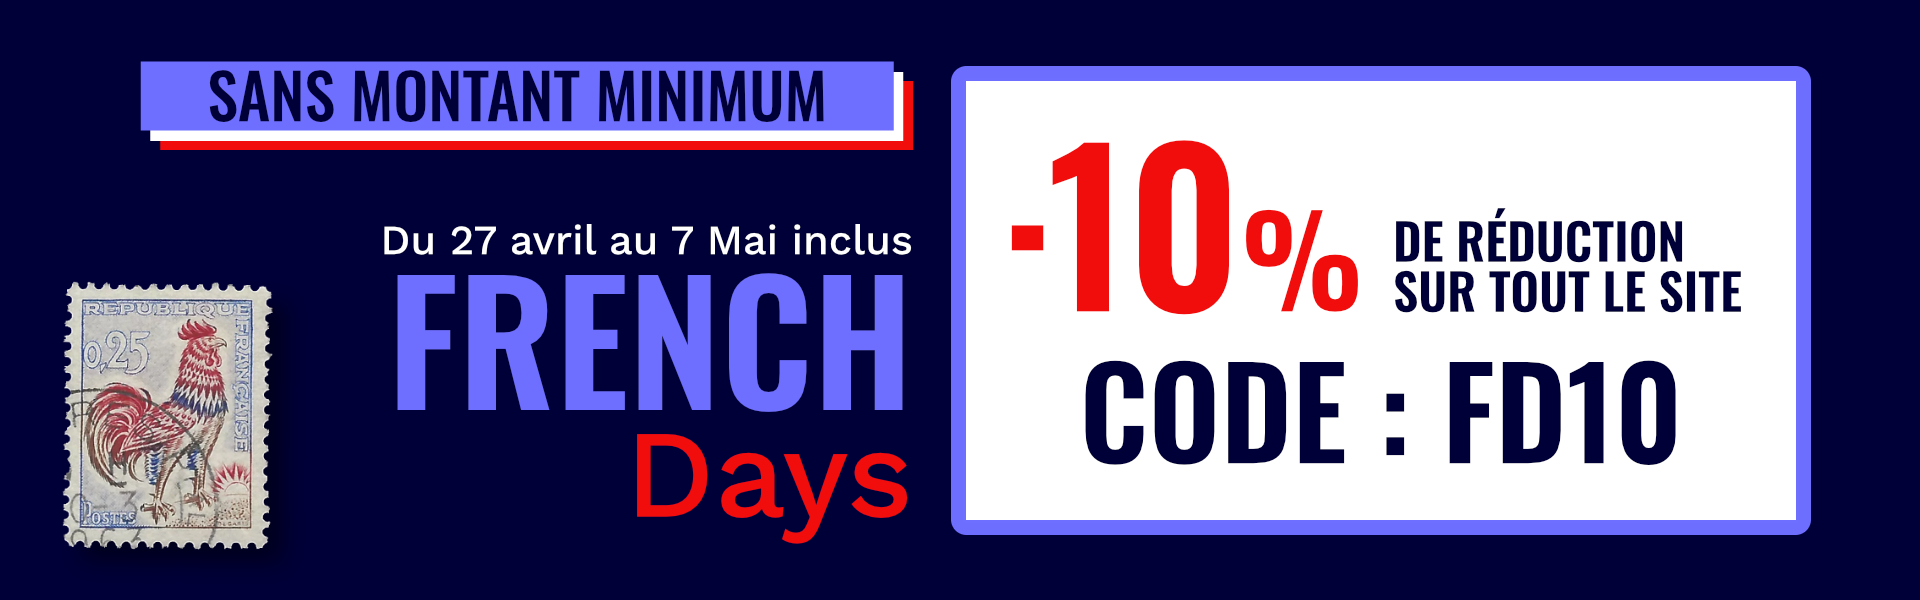 French days : - 10% sur tout le site avec le code FD10.